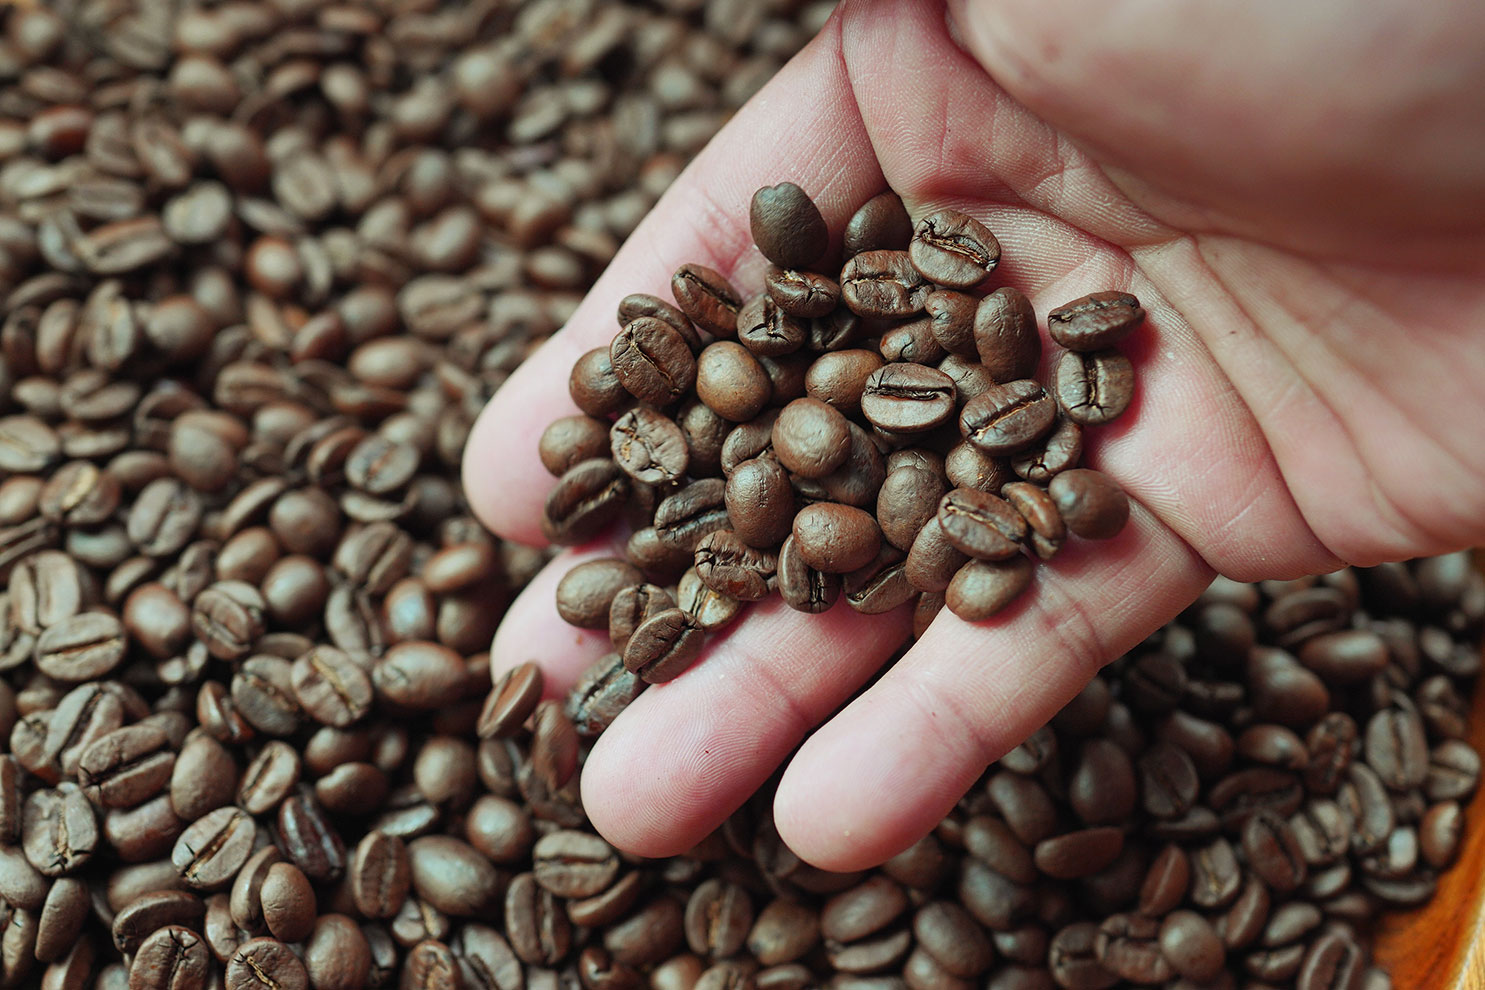 コーヒー機器・生豆 商品一覧 | ダイニチWebShop